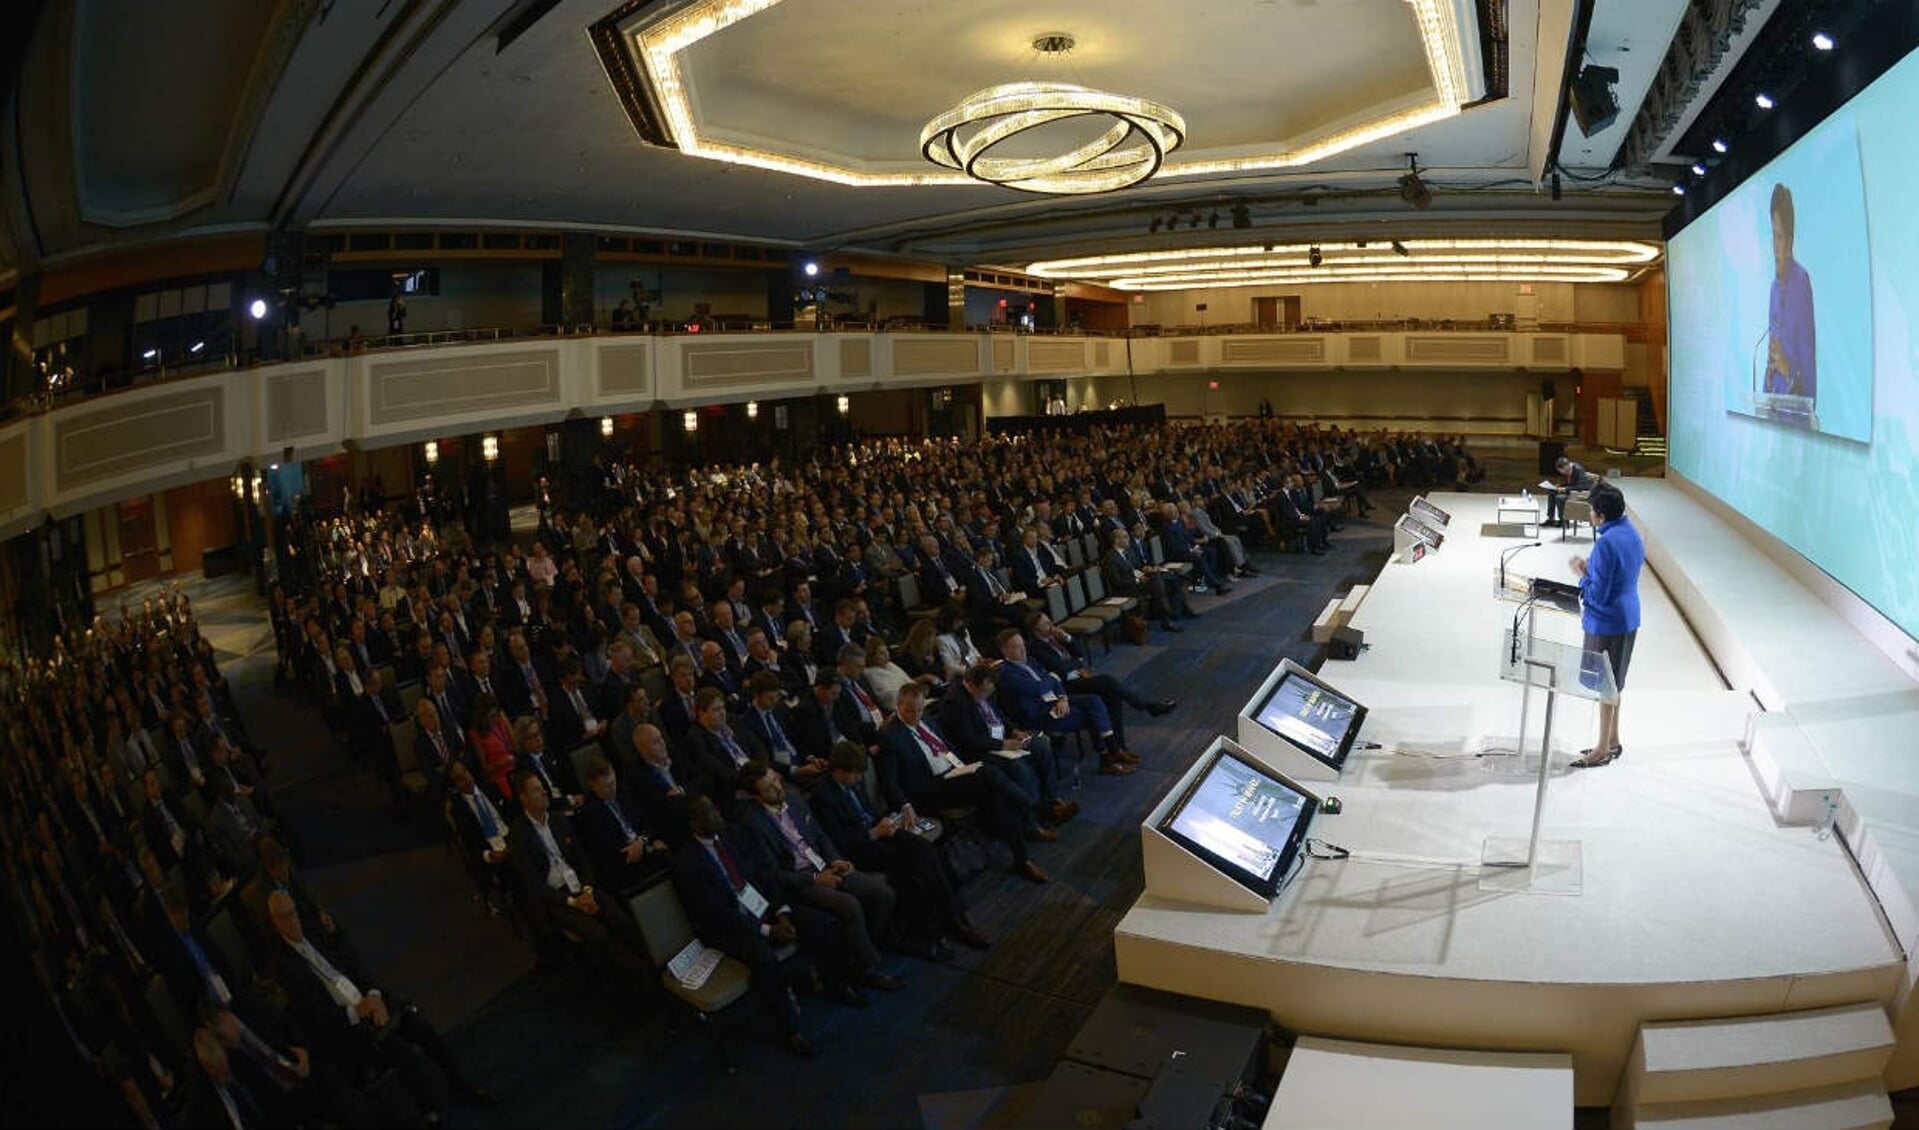 CGF Global Summit 2015